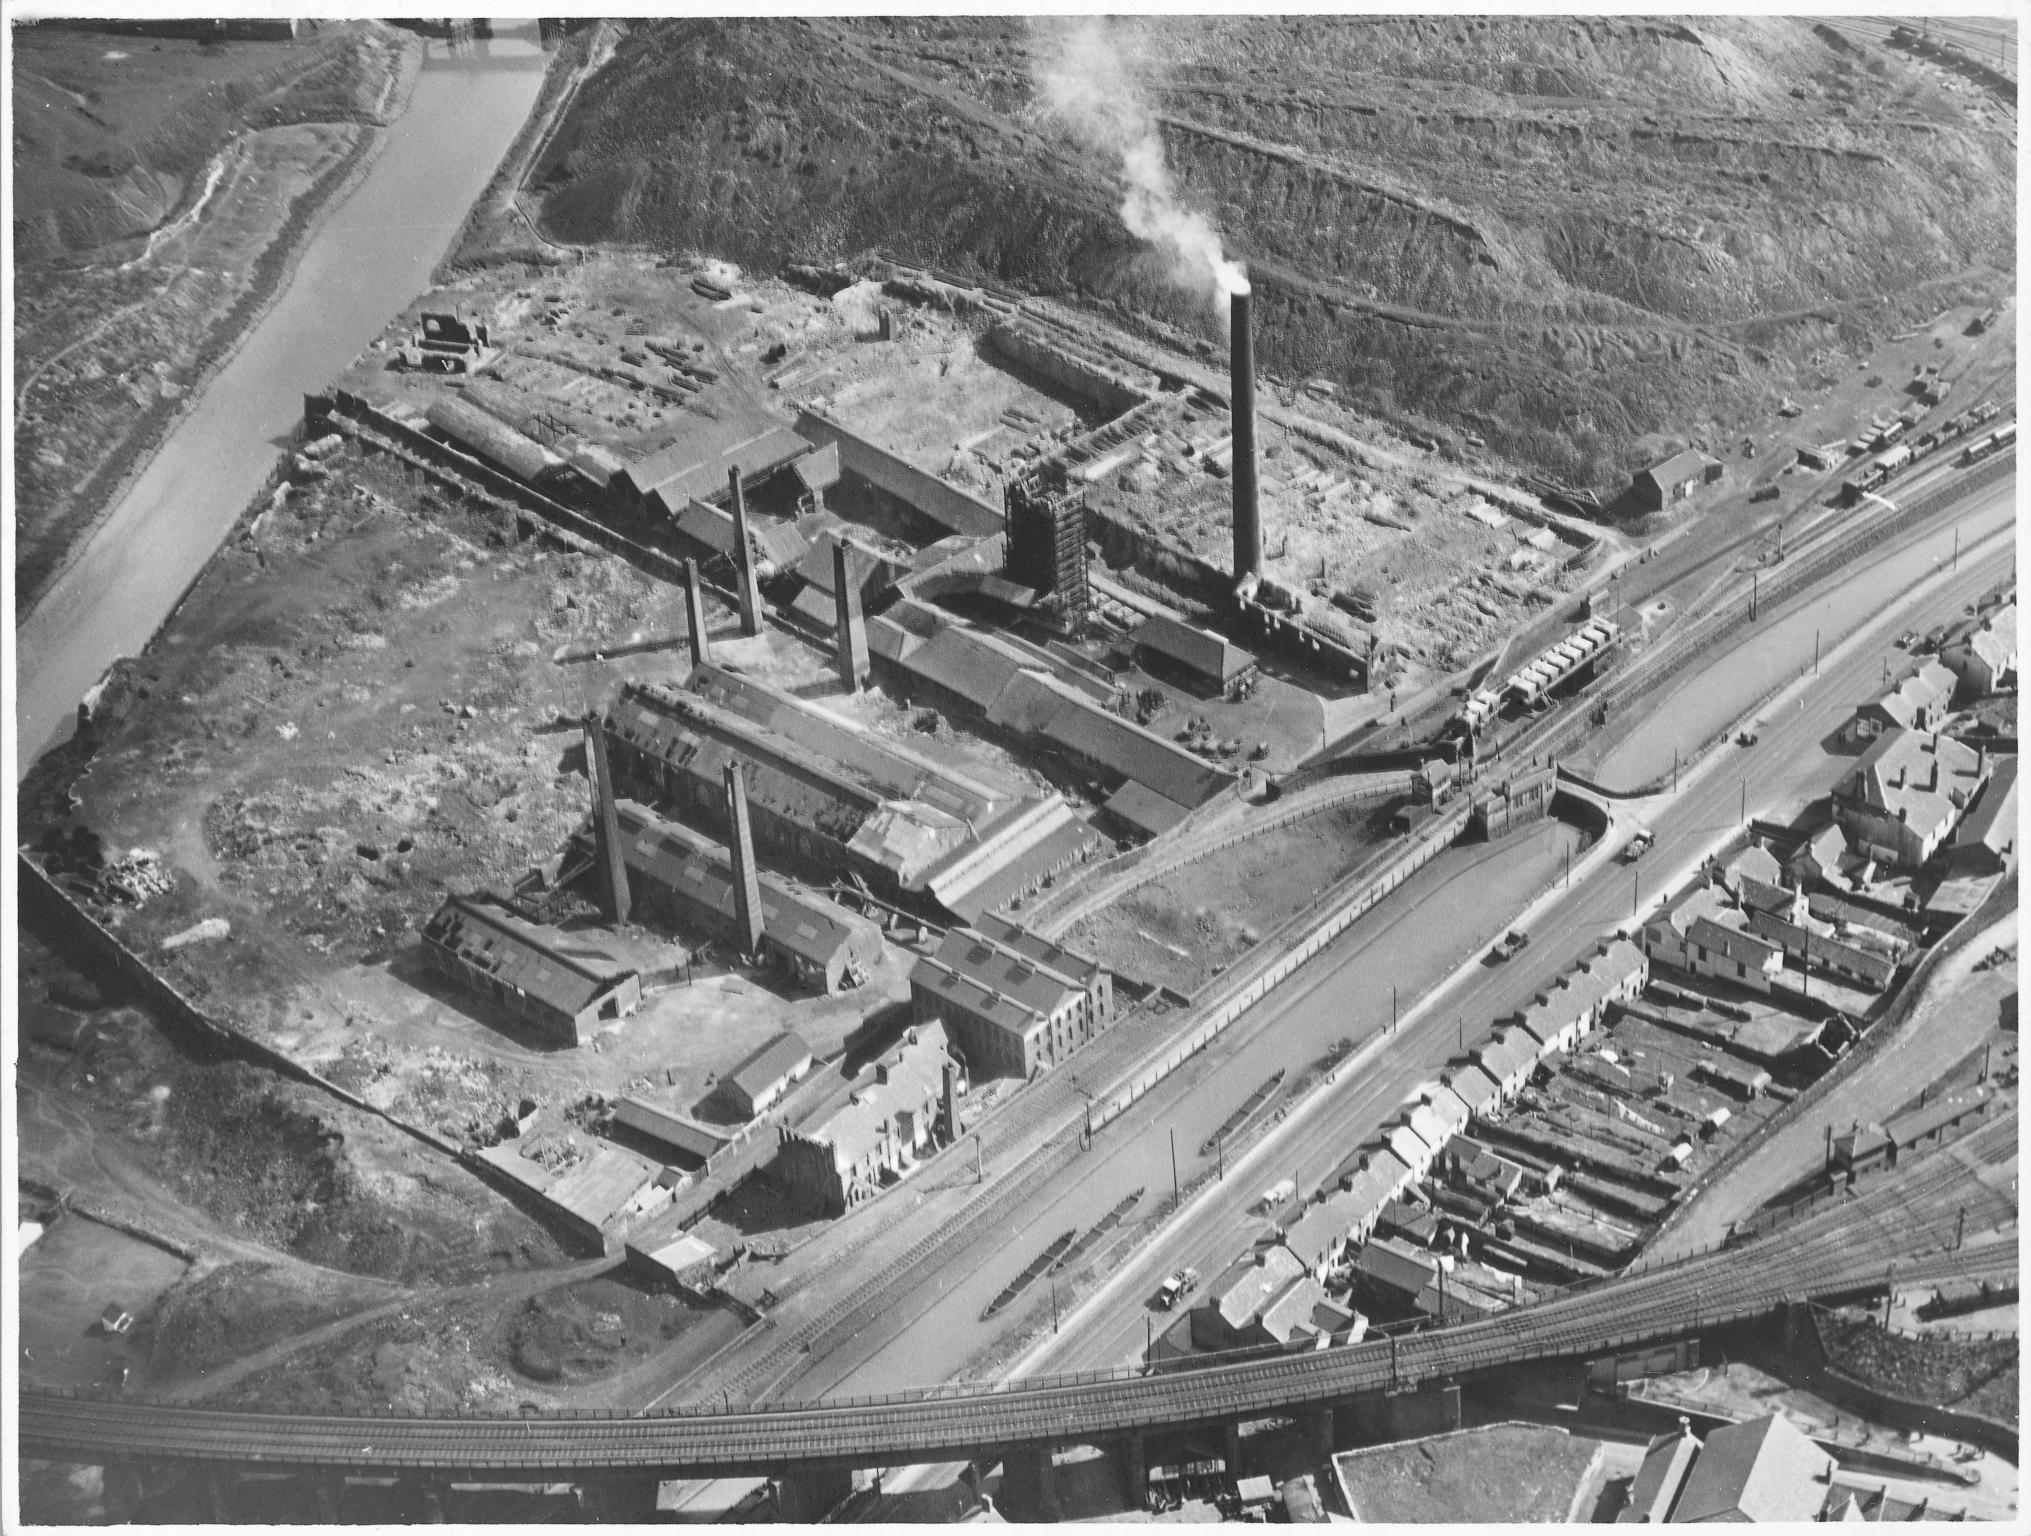 Landore Steel Works & Landore Alkali Works, photograph